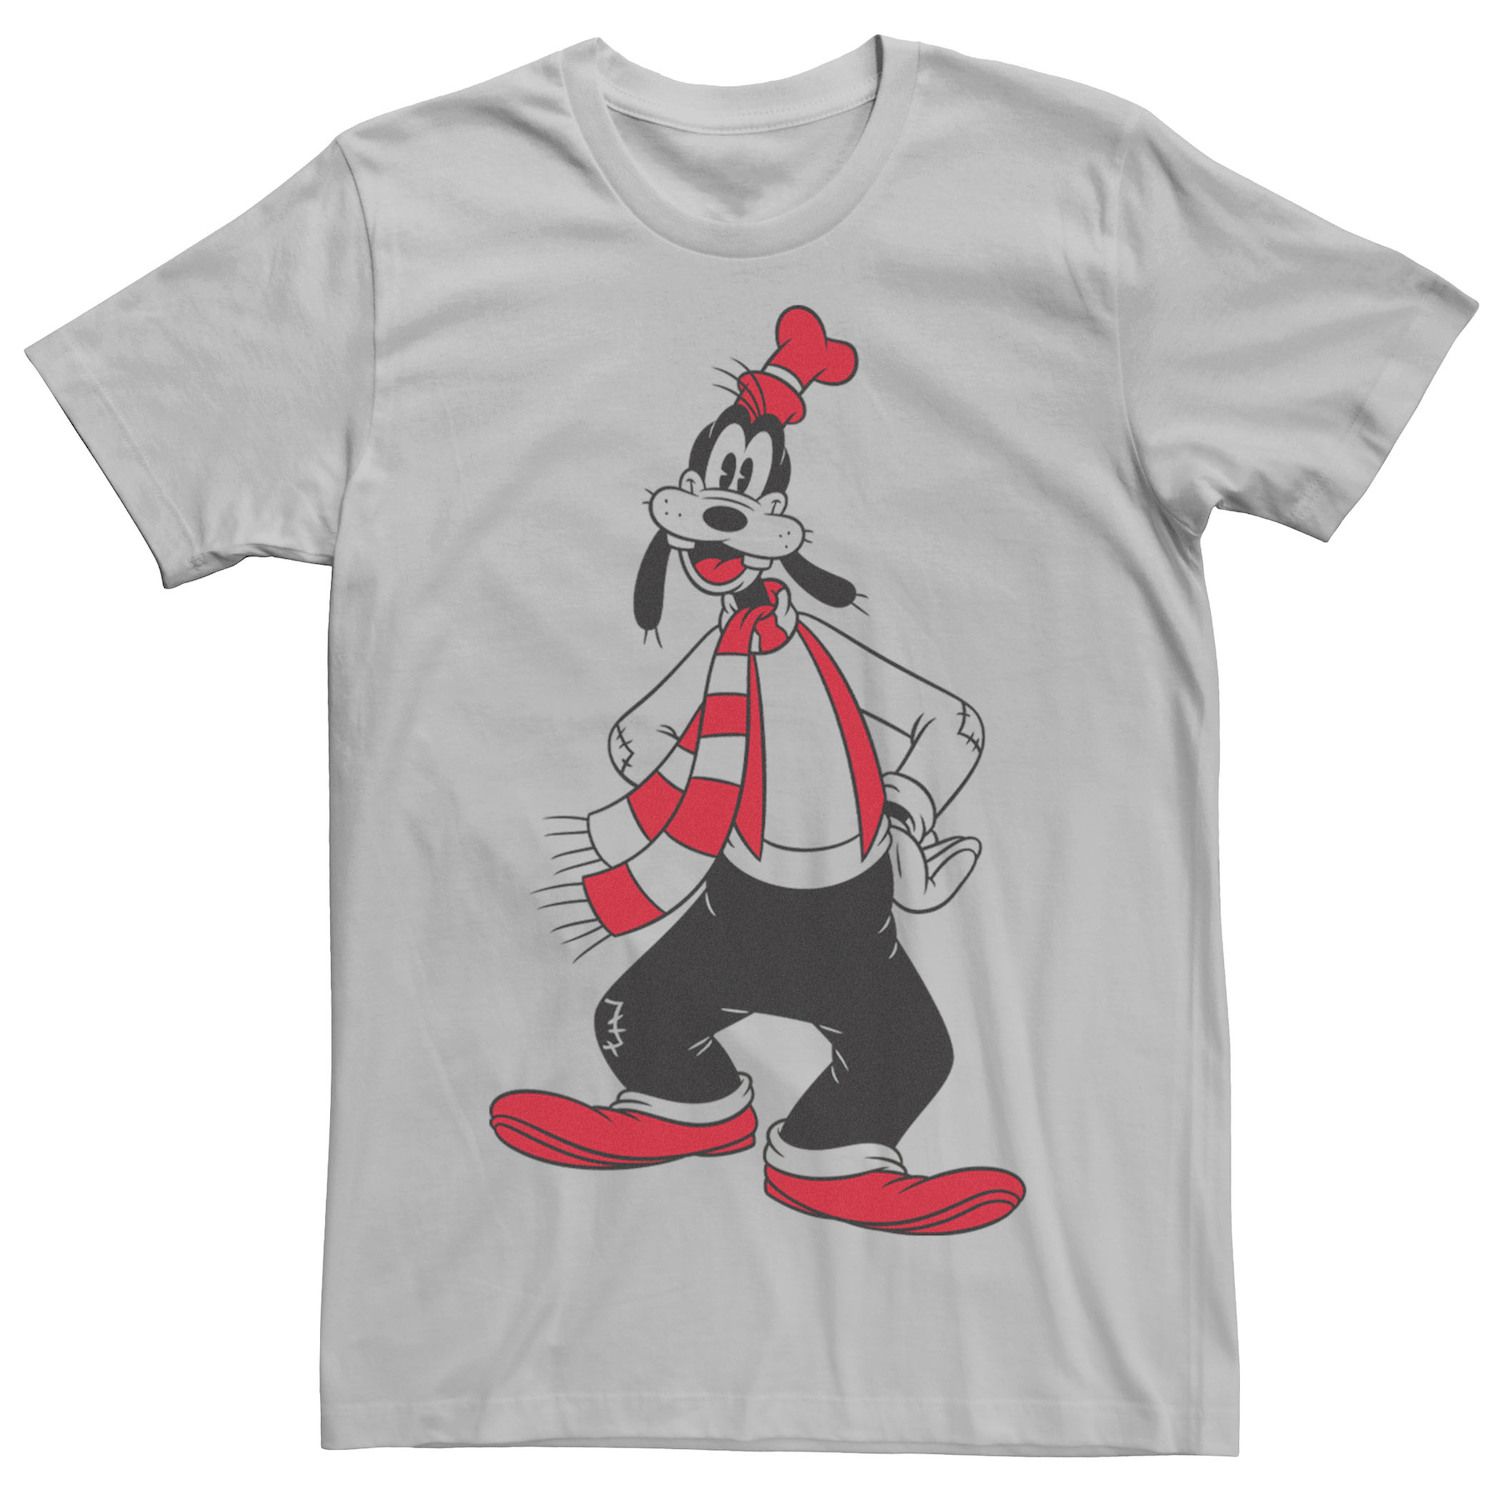 Мужская футболка с рождественским контуром Goofy Disney